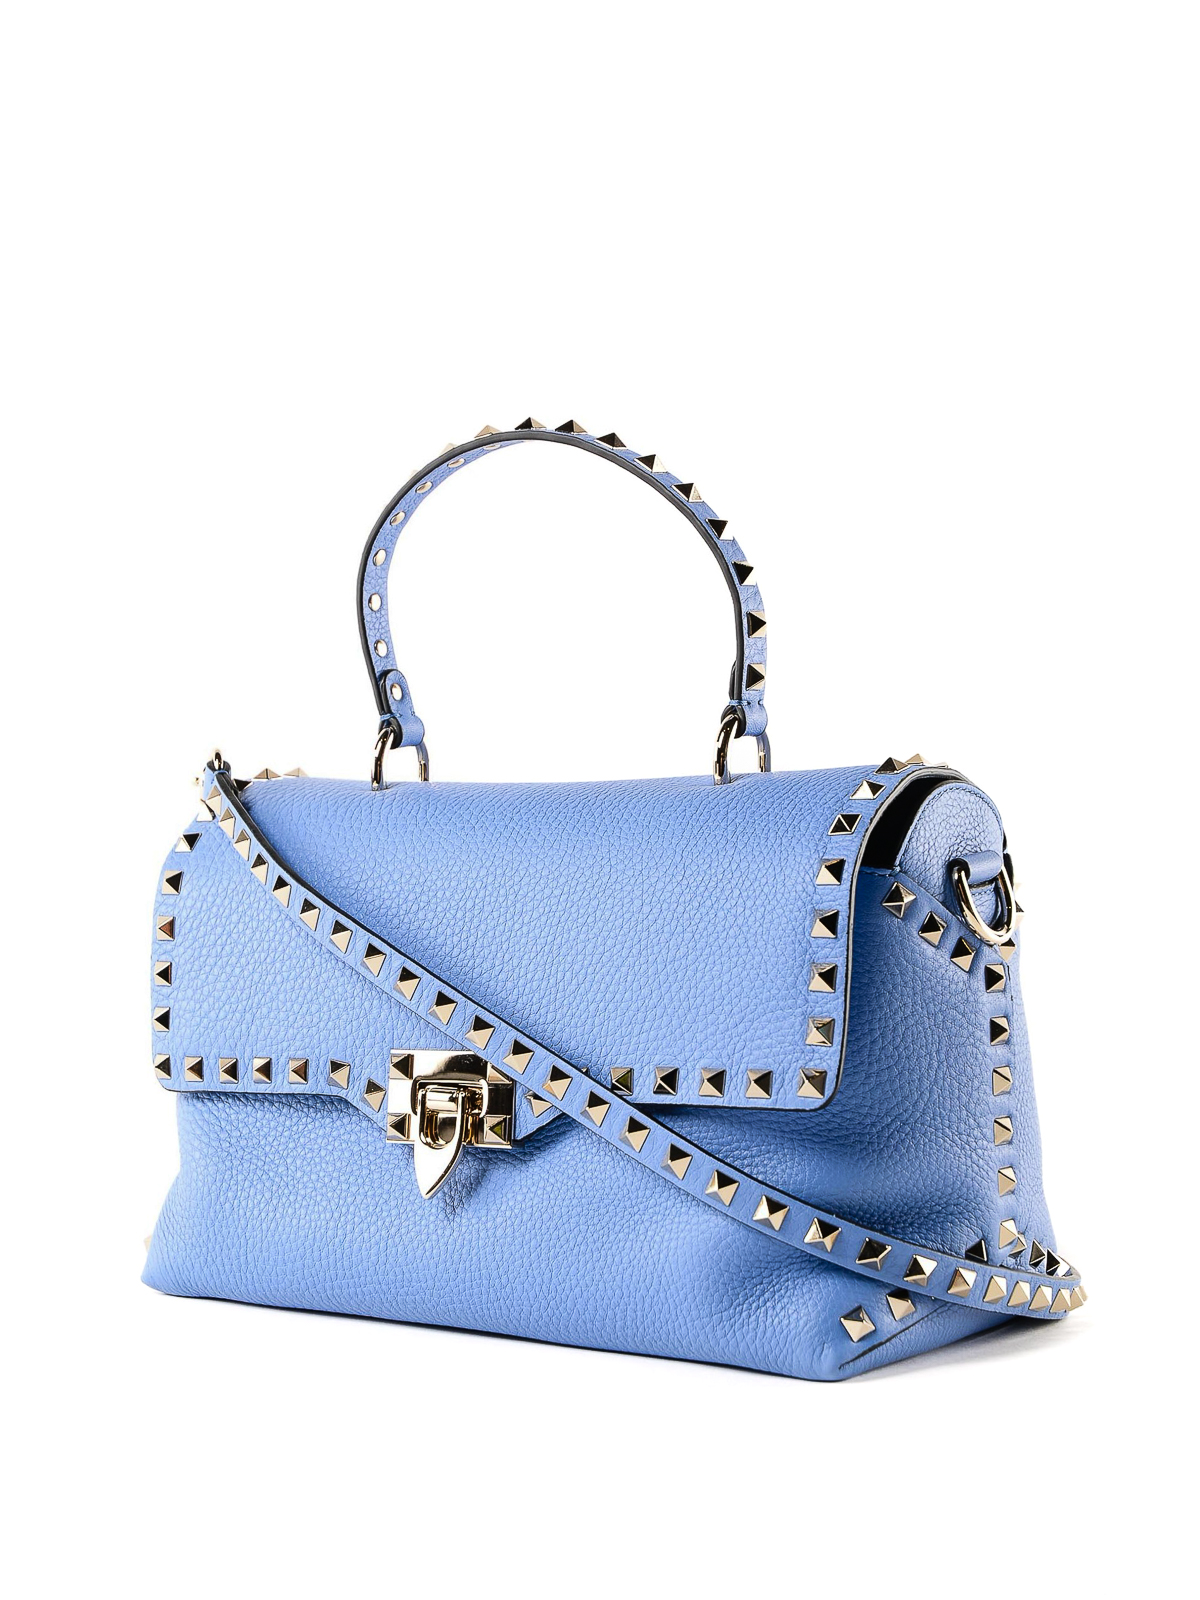 affjedring Ikke moderigtigt finansiere Totes bags Valentino Garavani - Rockstud sky blue leather tote bag -  RW2B0D16VSLGY7